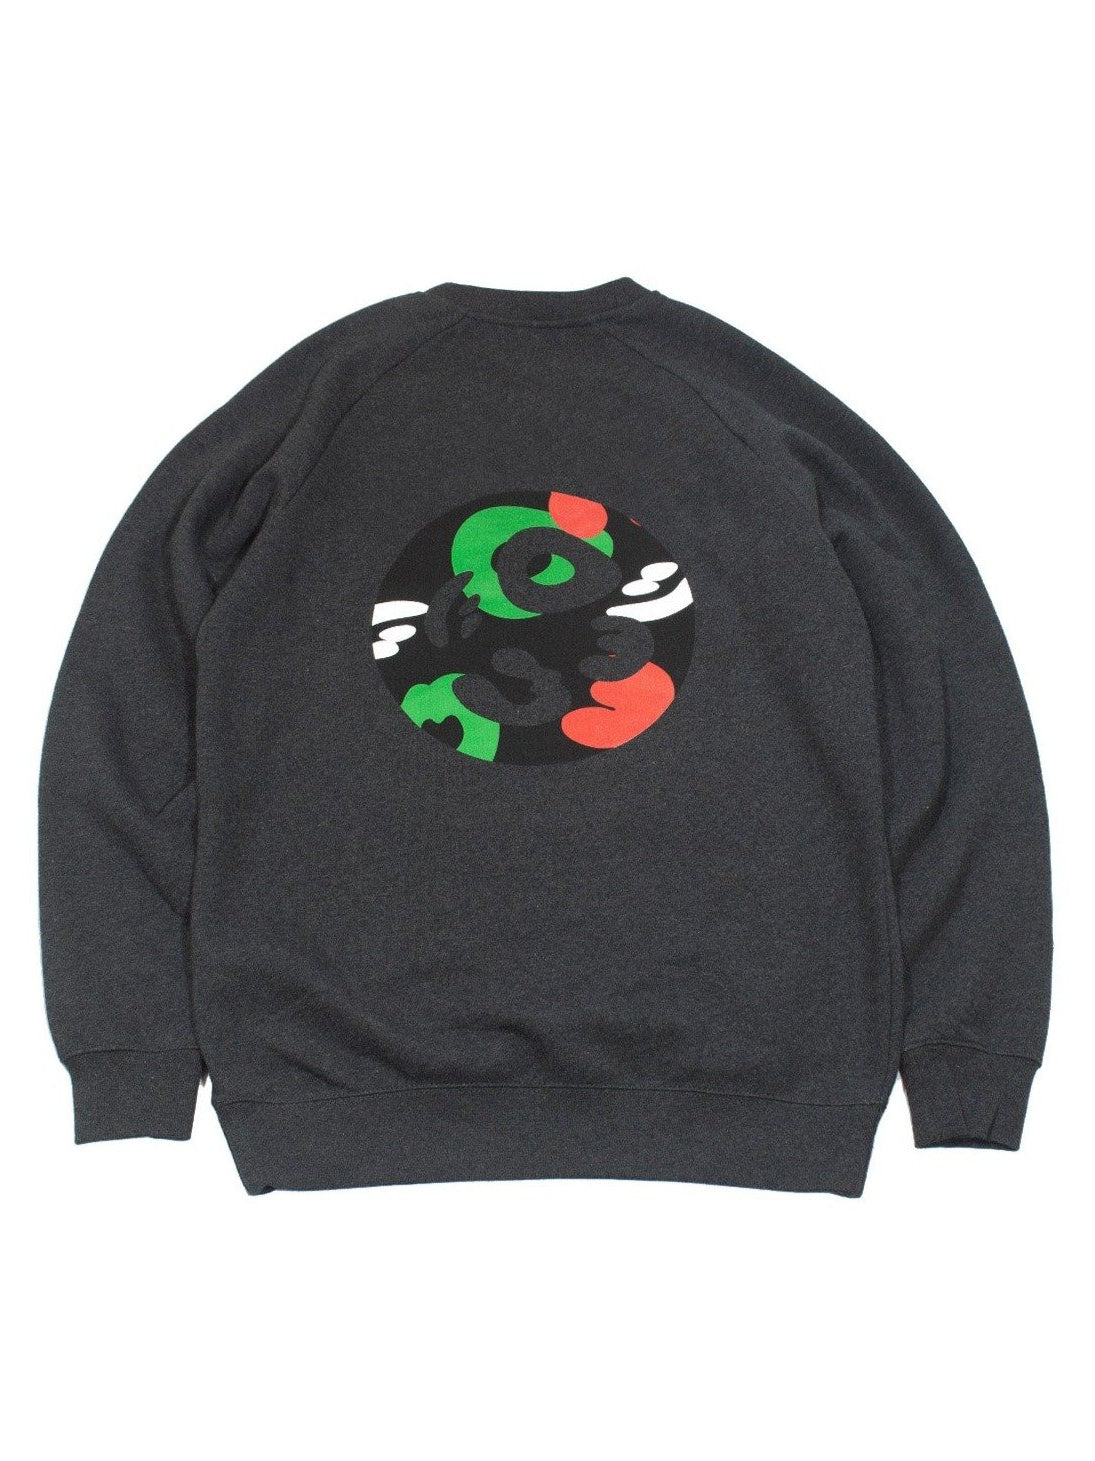 Cotton Raglan Sweatshirt - Camo Crest in Dark Heather